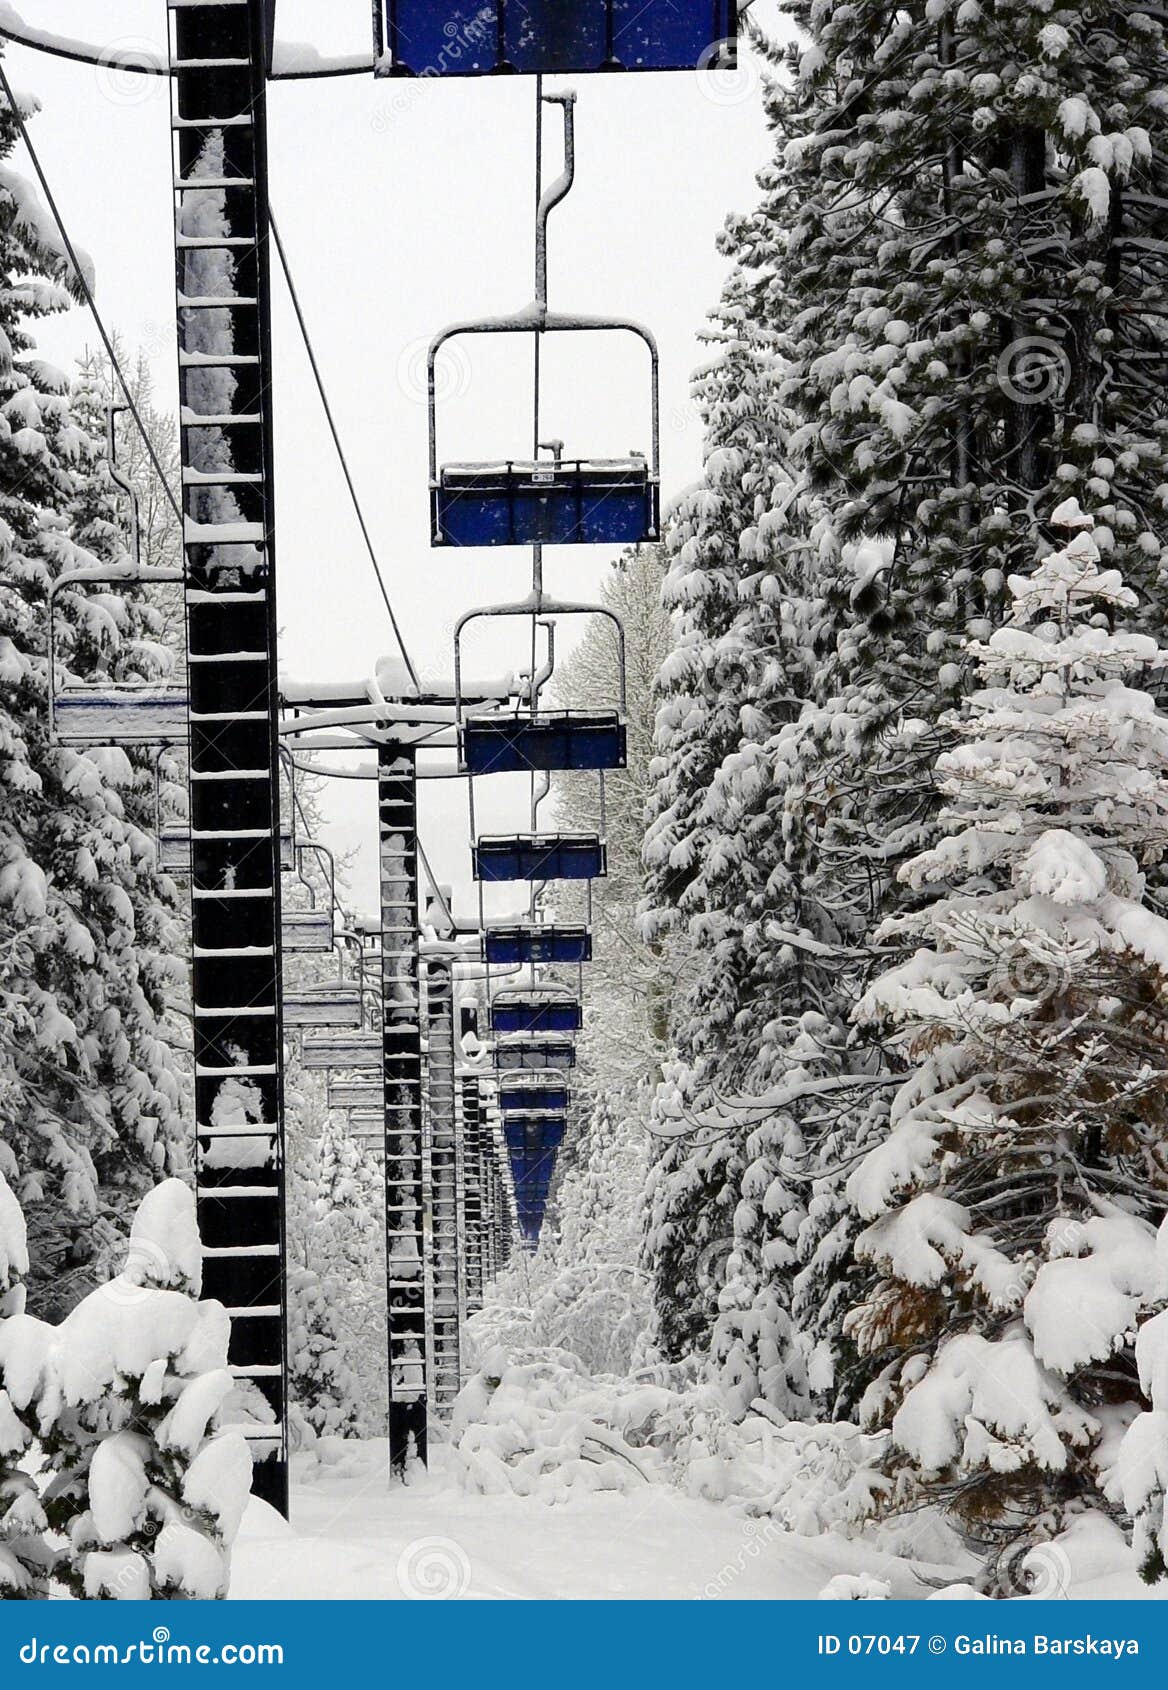 empty ski lift